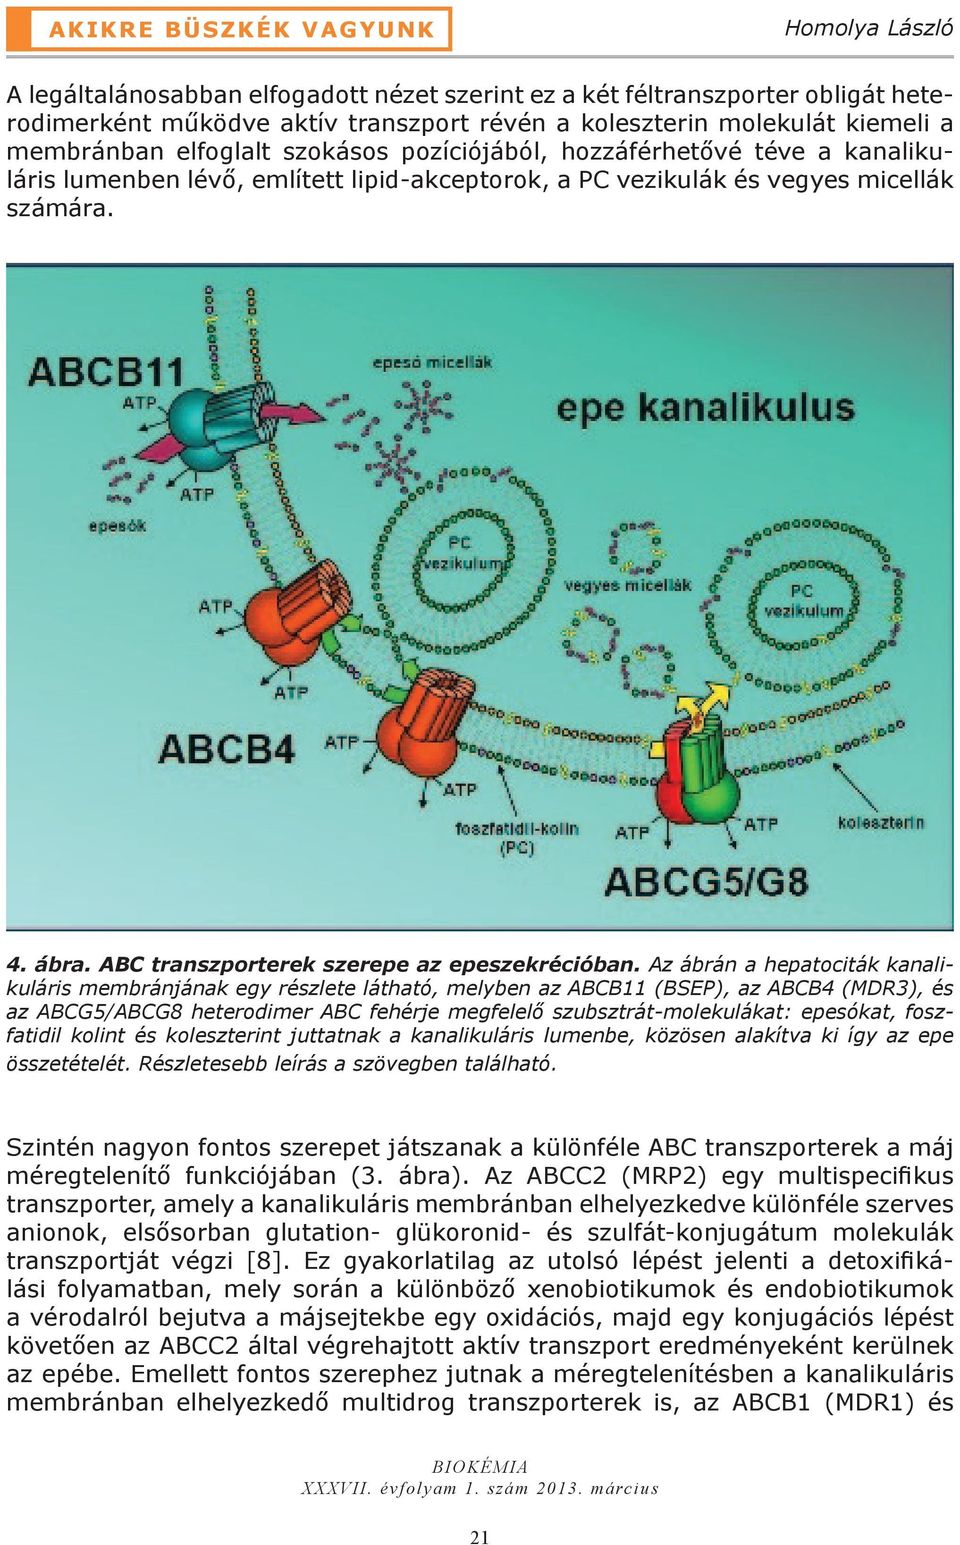 Az ábrán a hepatociták kanalikuláris membránjának egy részlete látható, melyben az ABCB11 (BSEP), az ABCB4 (MDR3), és az ABCG5/ABCG8 heterodimer ABC fehérje megfelelő szubsztrát-molekulákat: